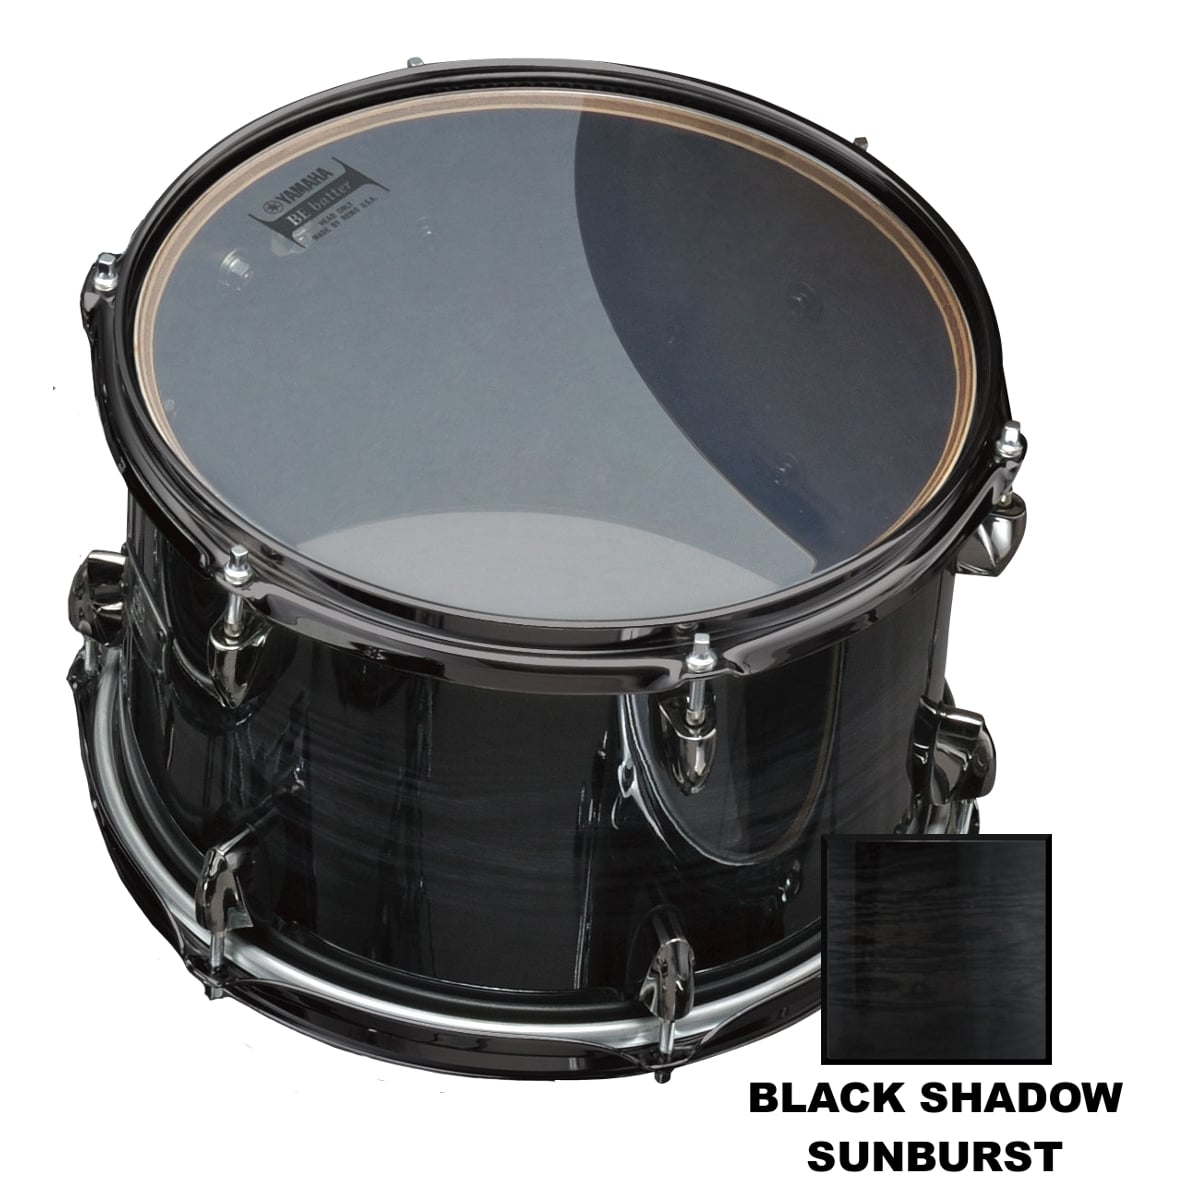 Lnt0807 - 8 X 7 - Black Shadow Sunburst pour 235